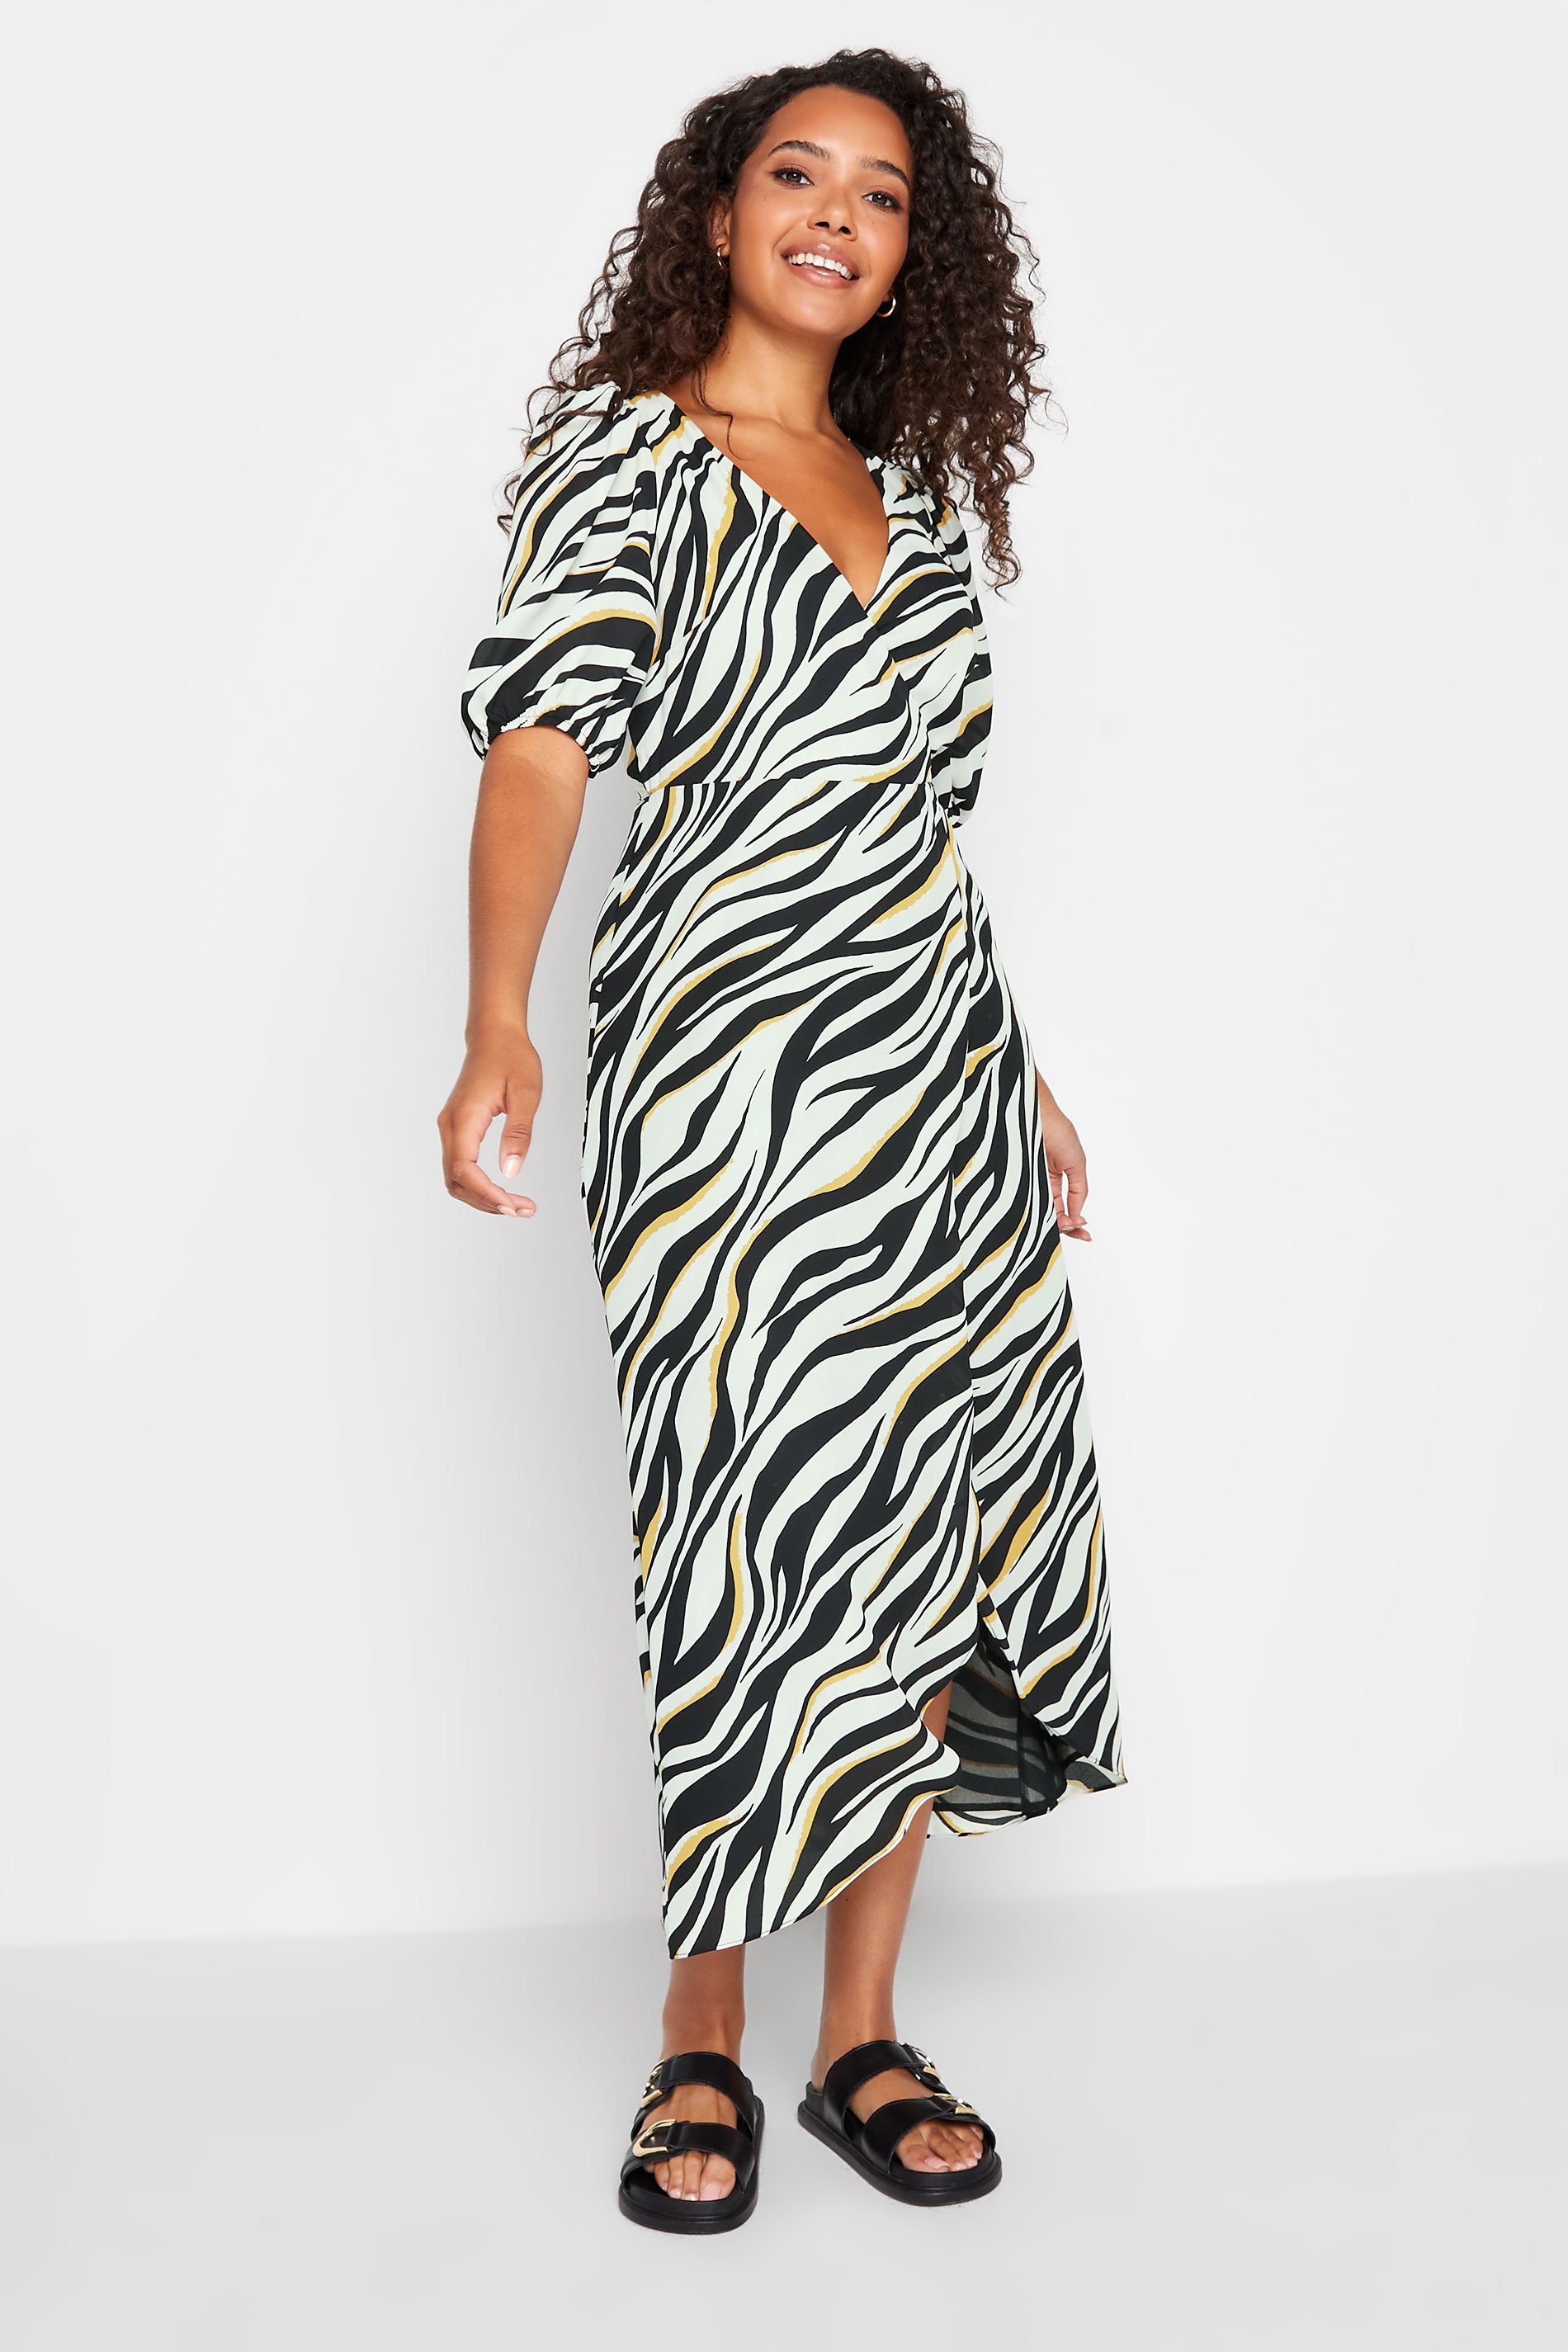 M&Co Black Zebra Print Wrap Dress | M&Co 2